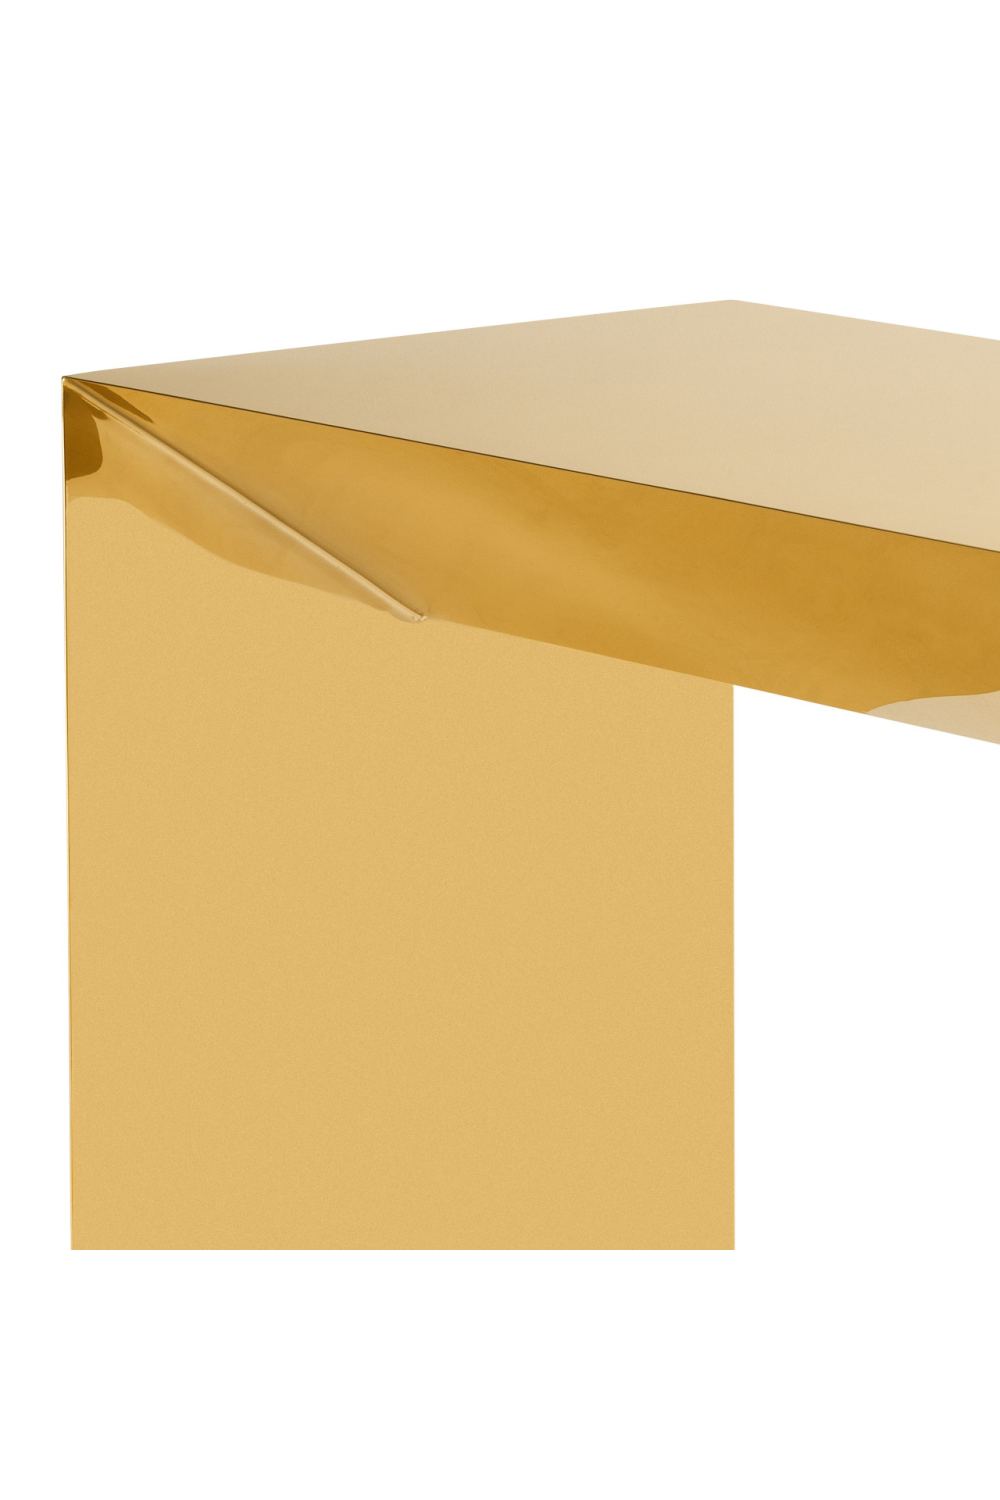 Gold Console Table | Eichholtz Carlow | #1 Eichholtz Retailer